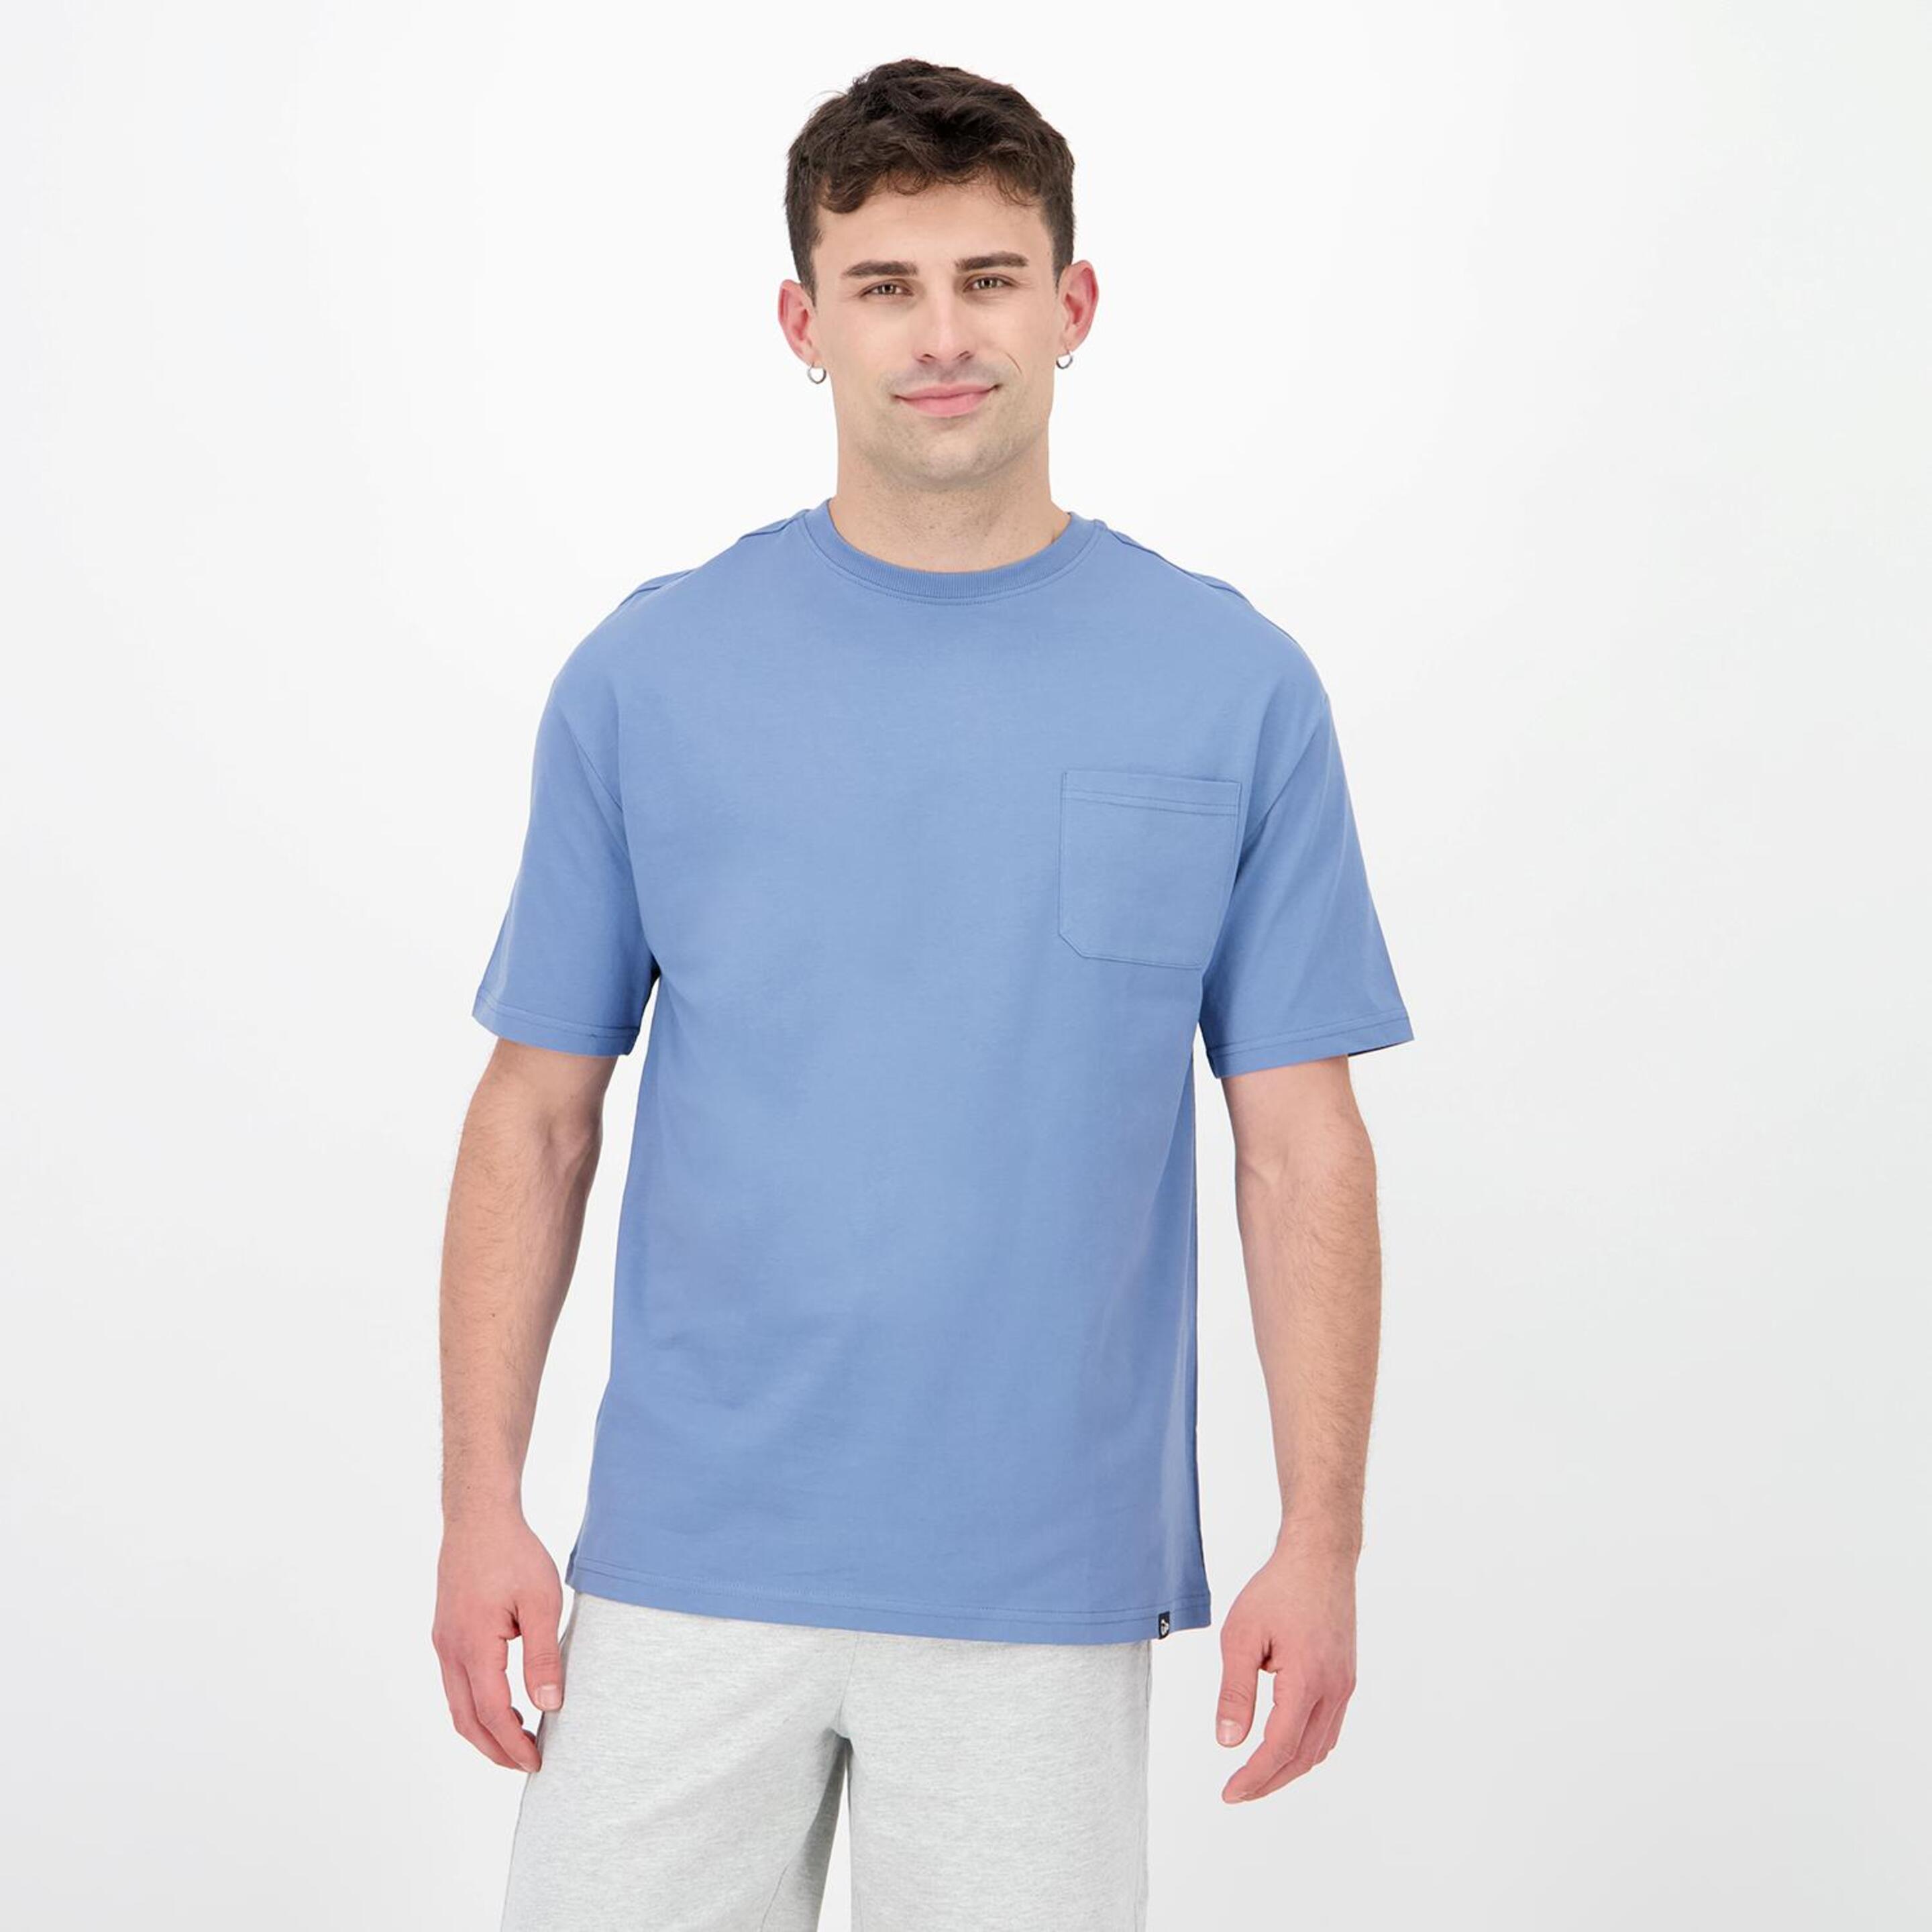 Up Vital Edition - azul - Camiseta Hombre